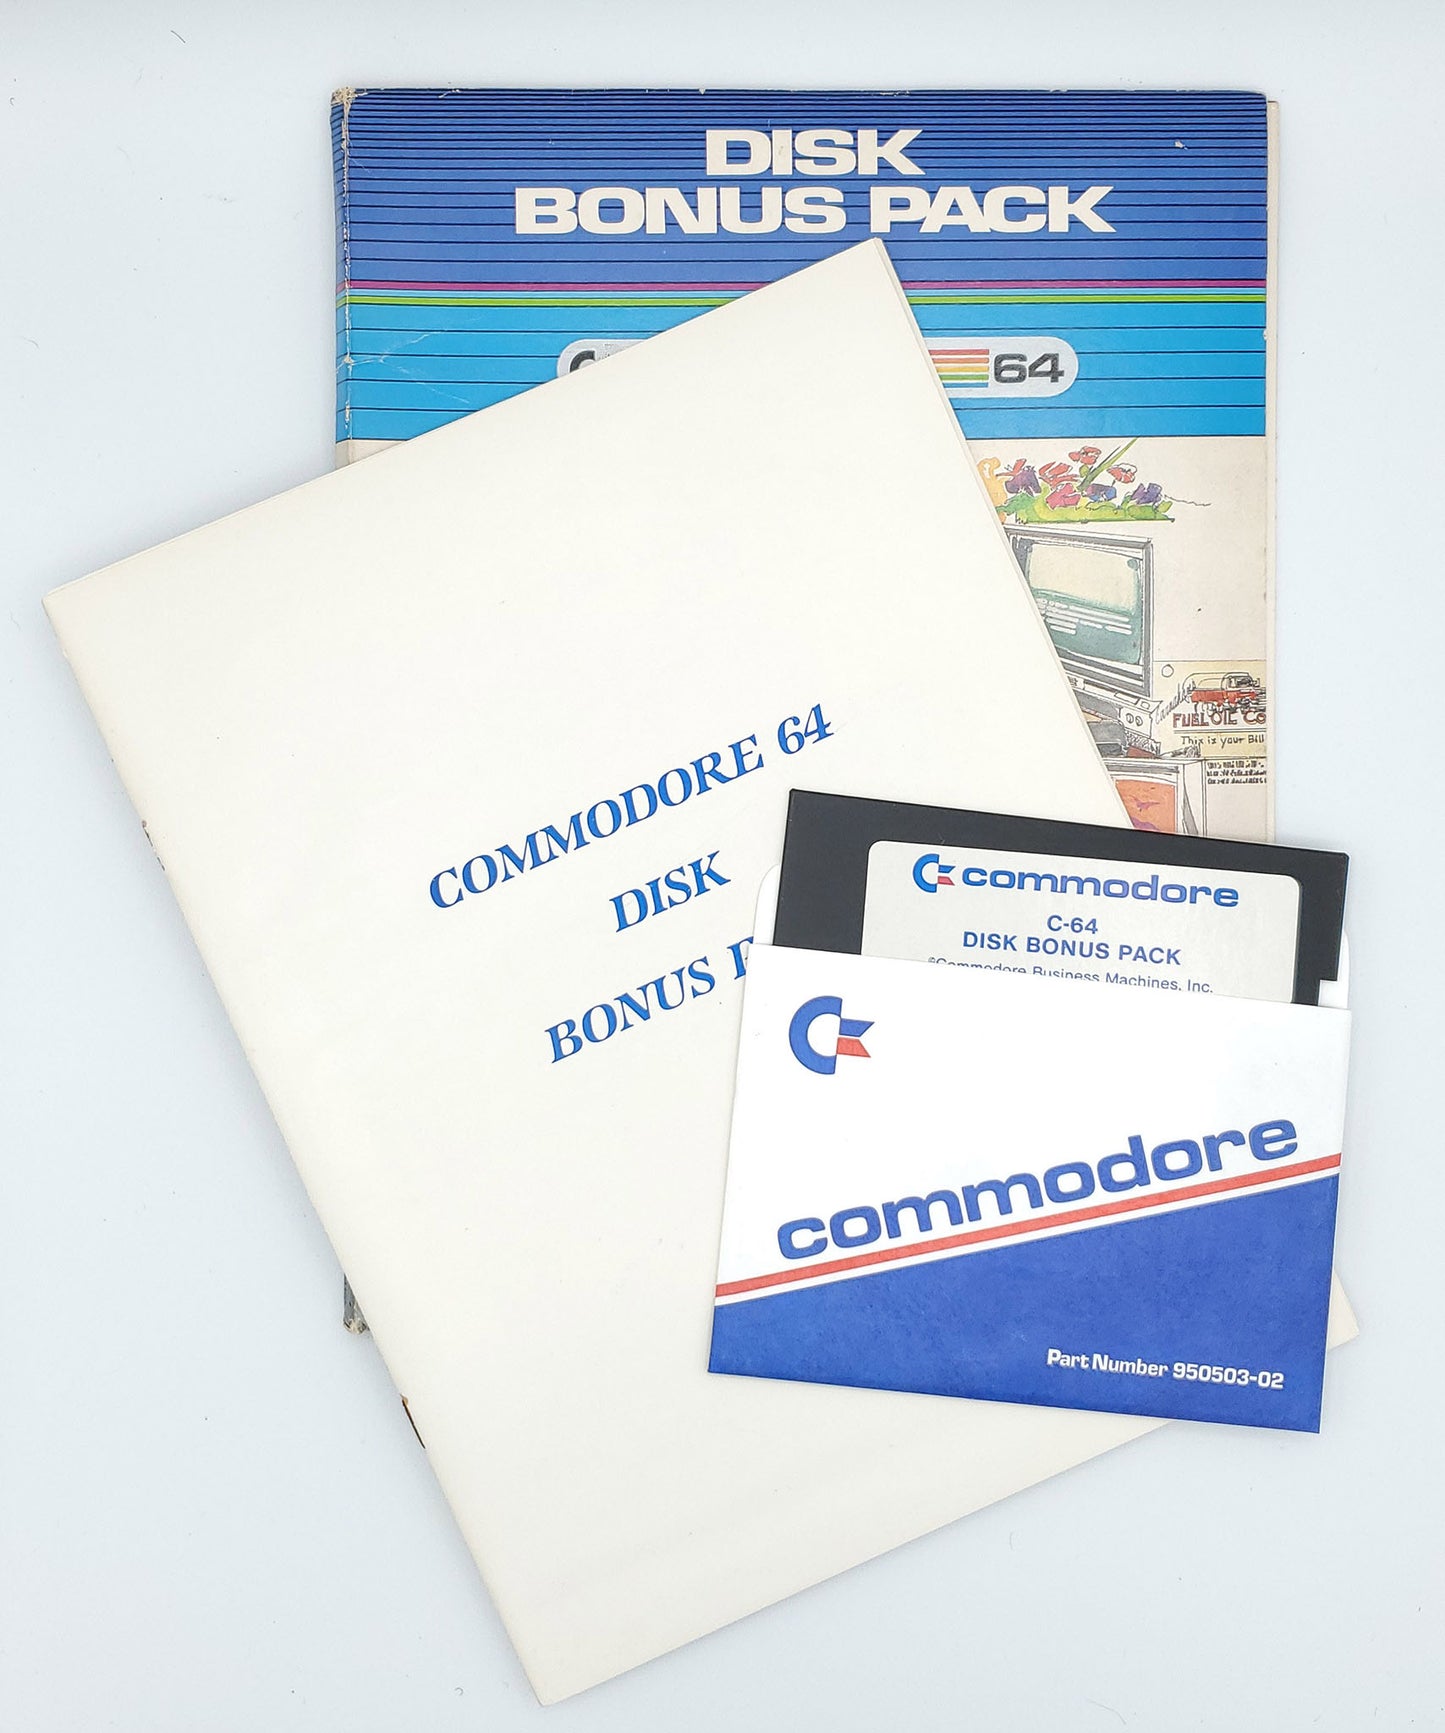 Disk Bonus Pack for the C64